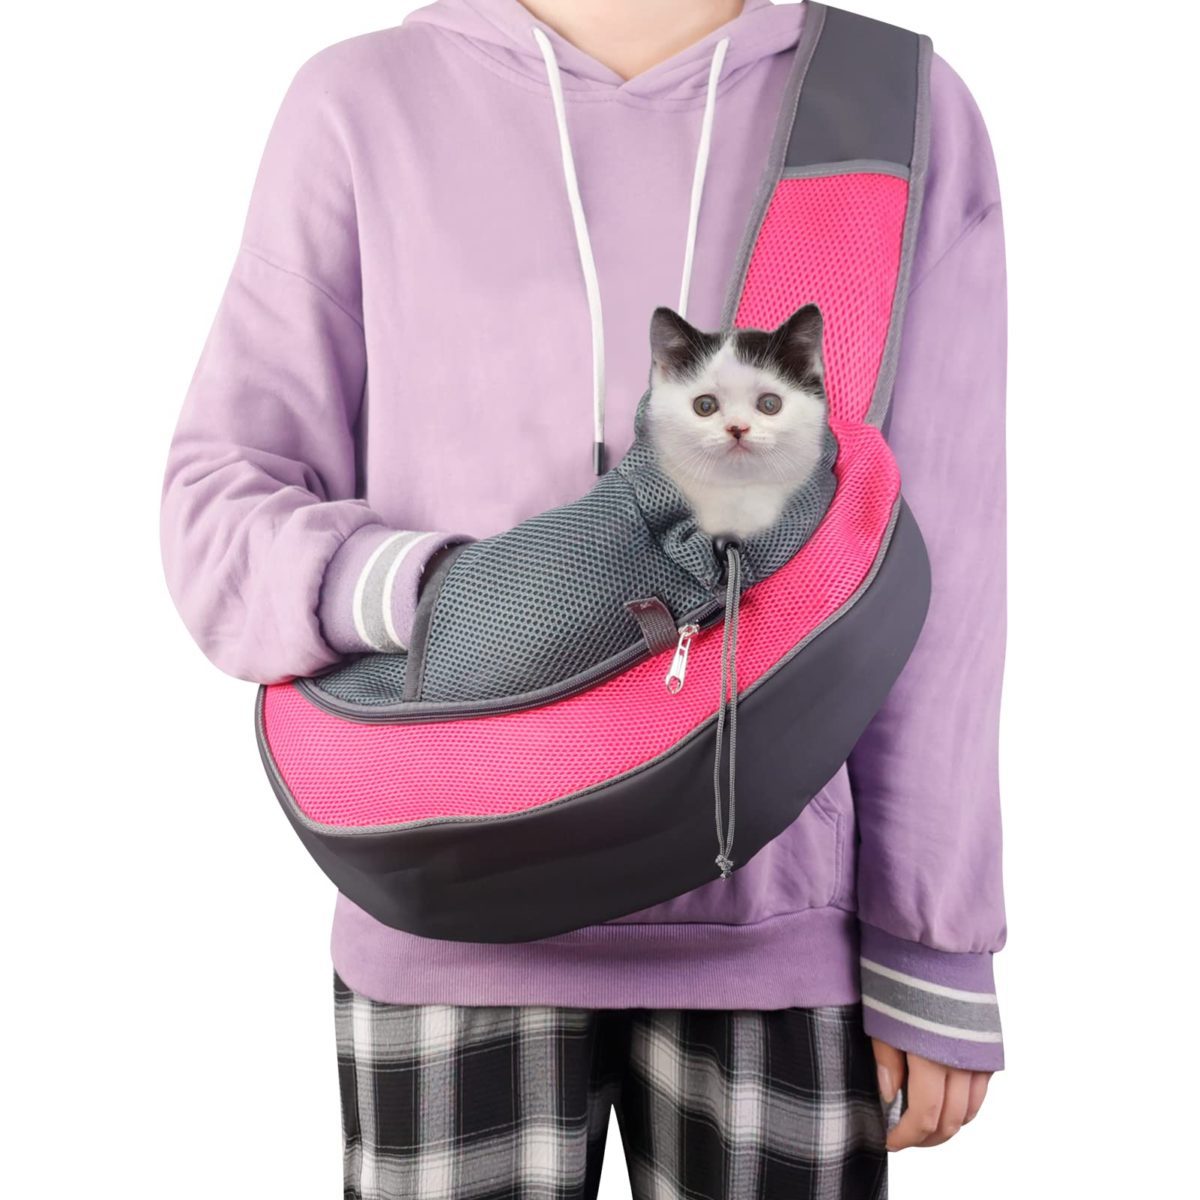 Arcwares Dog Sling Carrier, Travel Bag for Cat